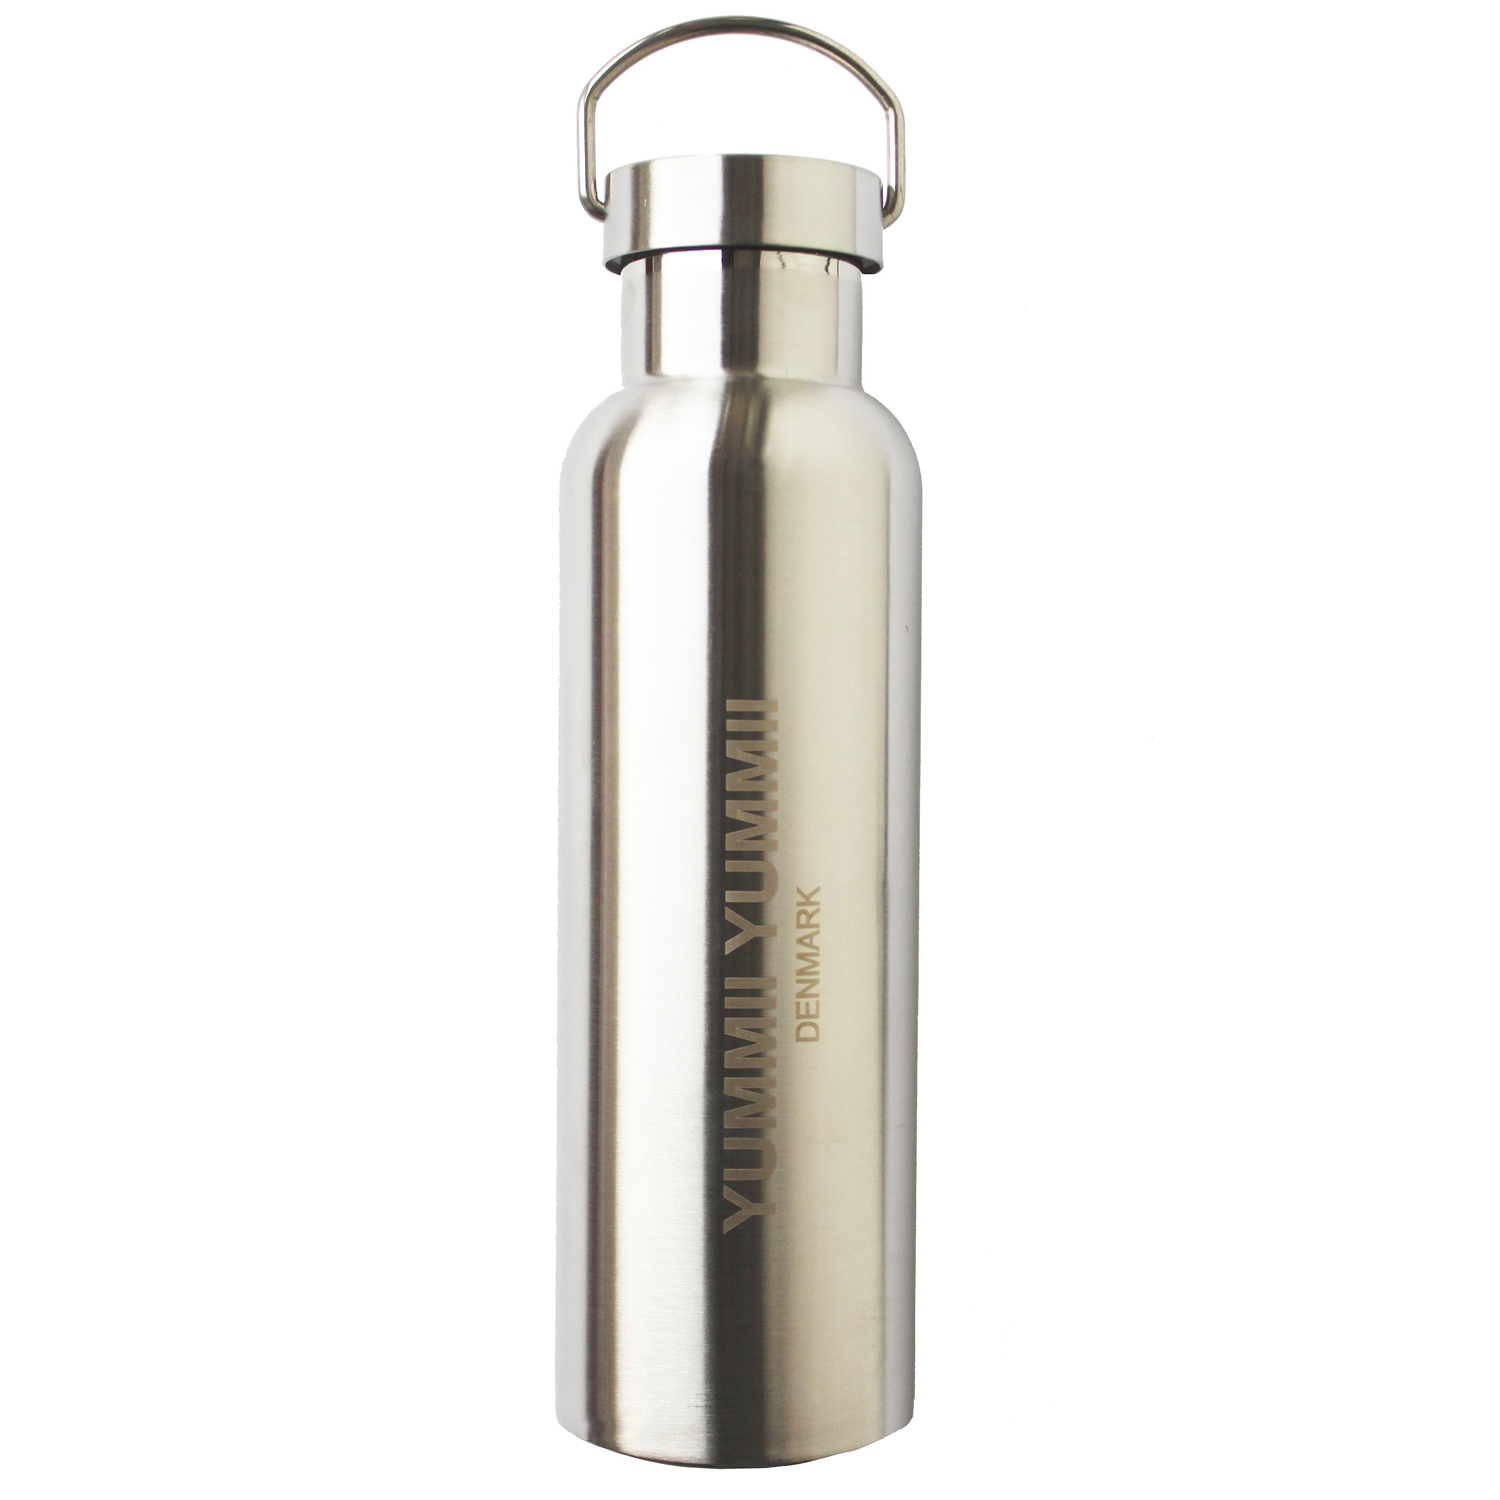 YUMMII YUMMII Thermosflasche 600ml isoliert Edelstahl - Deckel Edelstahl für kalte und heiße Getränke dänisches Design umweltfreundlich